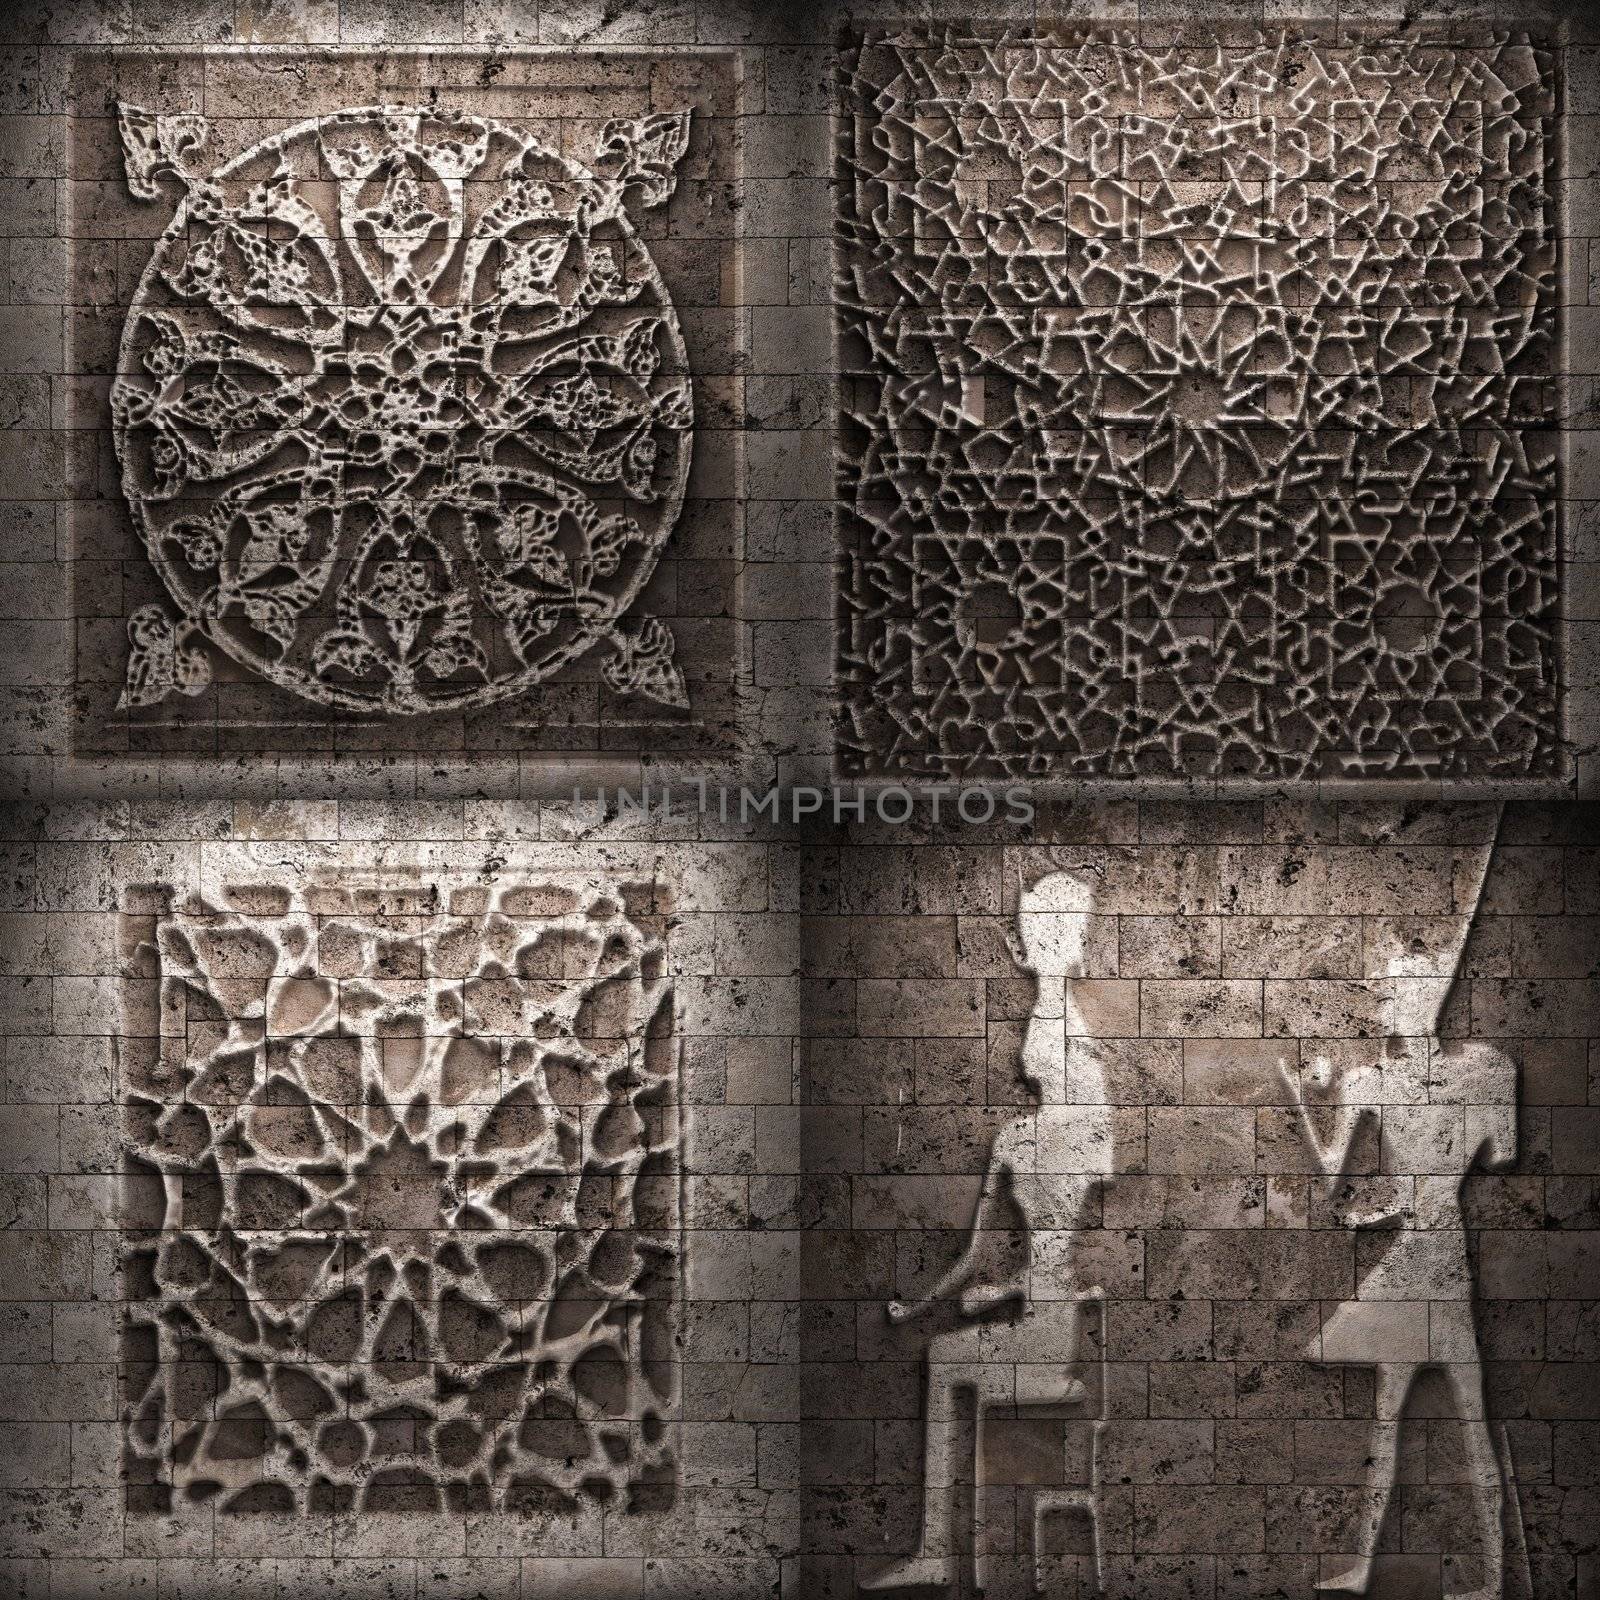 Retro stone ornament made in 3D graphics